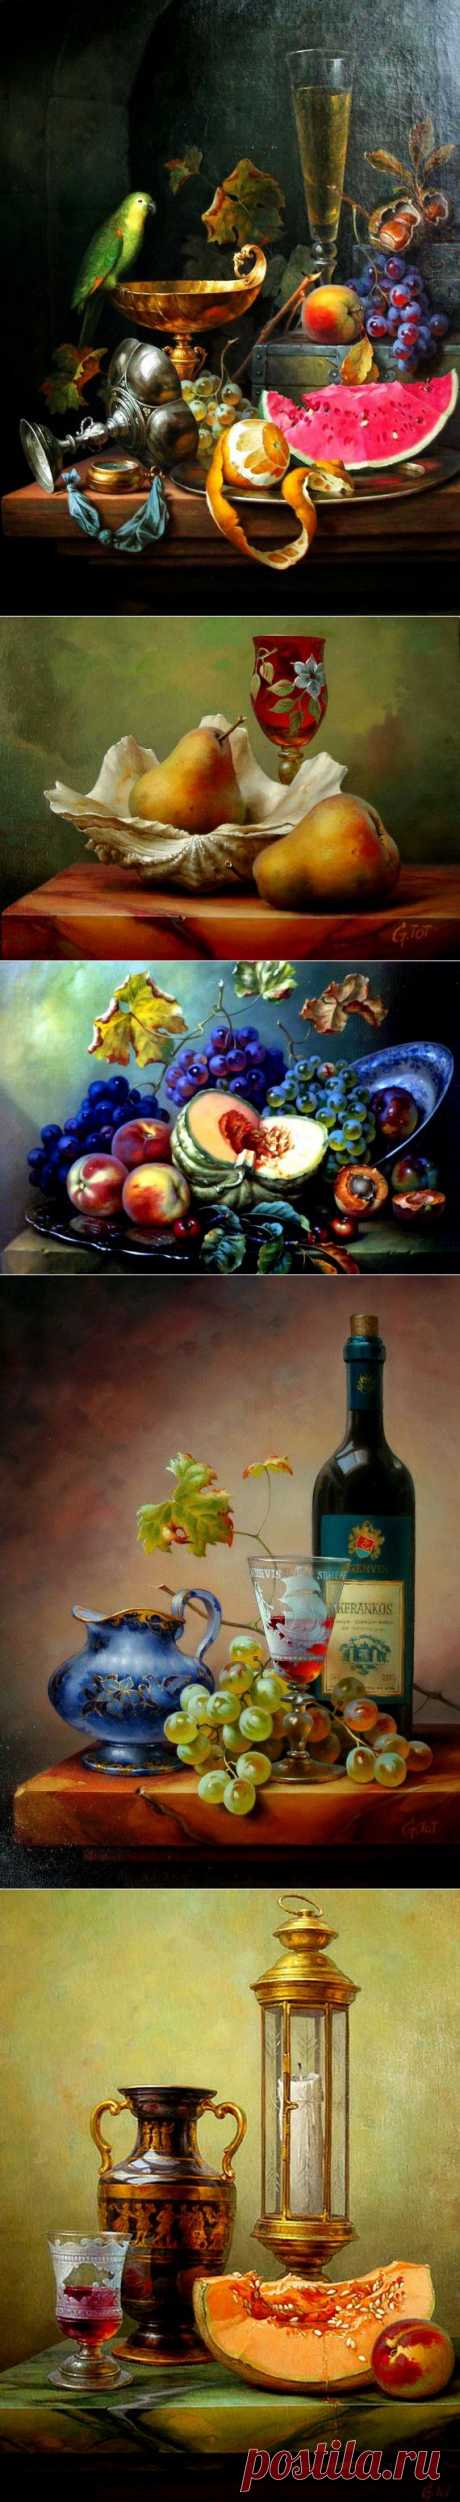 Натюрморты с вином и фруктами от венгерского художника Габора Тота. / Картинки для декупажа / PassionForum - мастер-классы по рукоделию